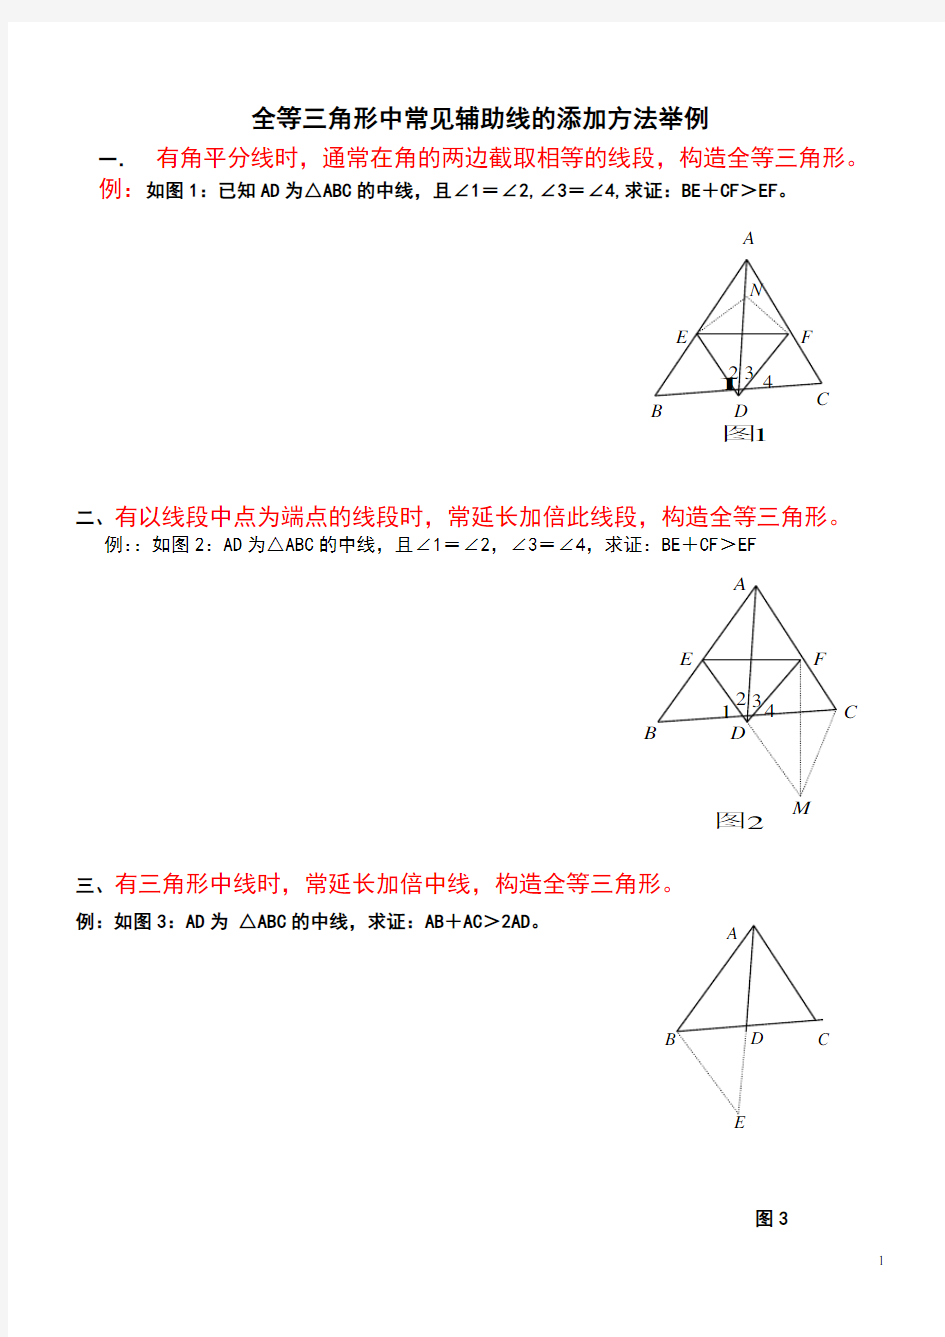 全等三角形中常见辅助线的添加方法